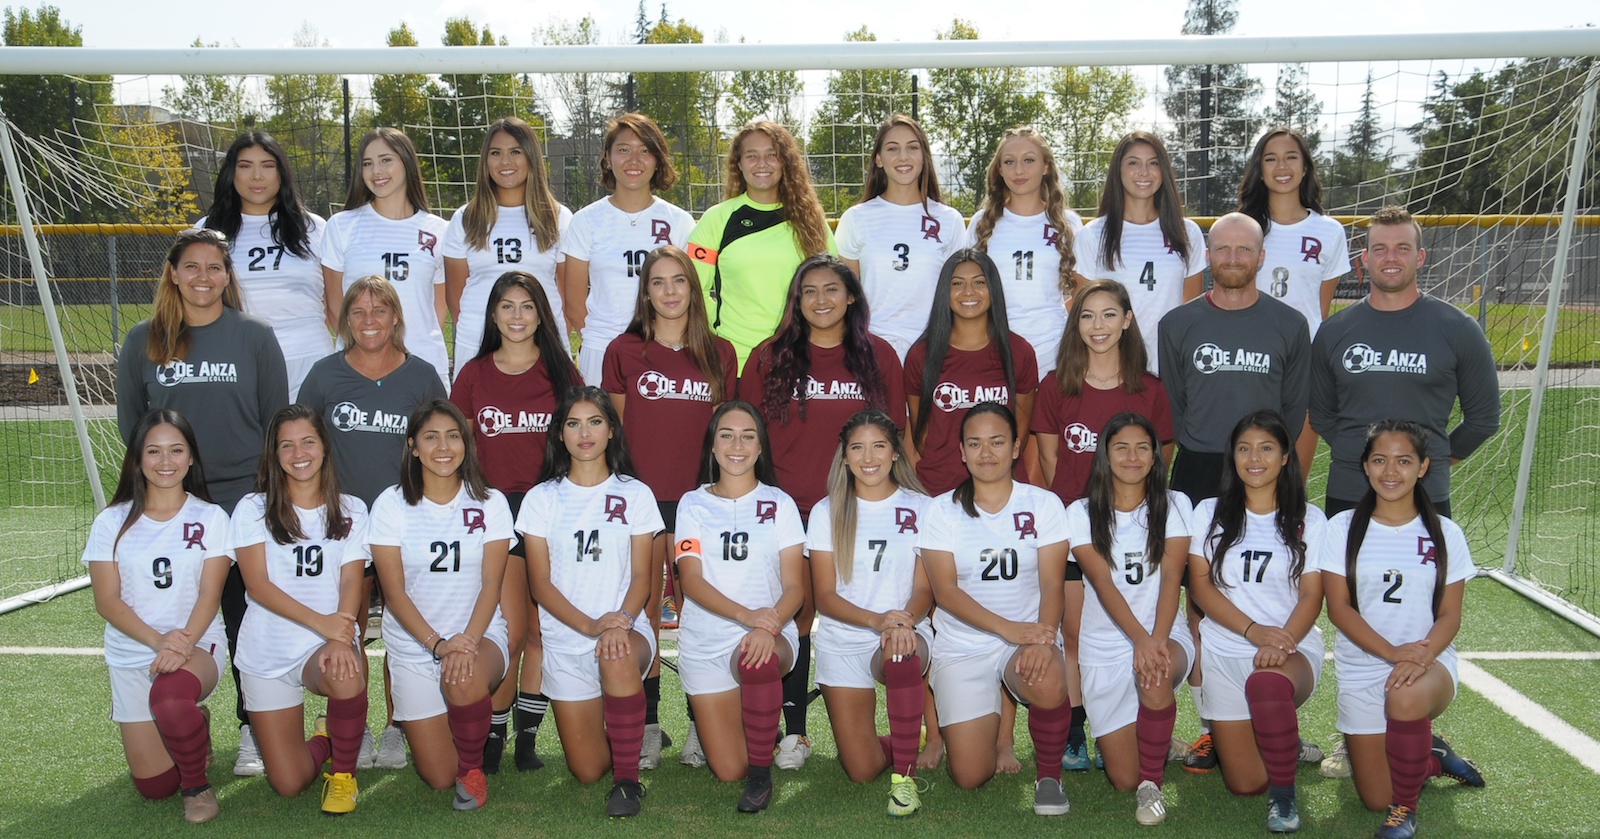 2019 women's soccer team